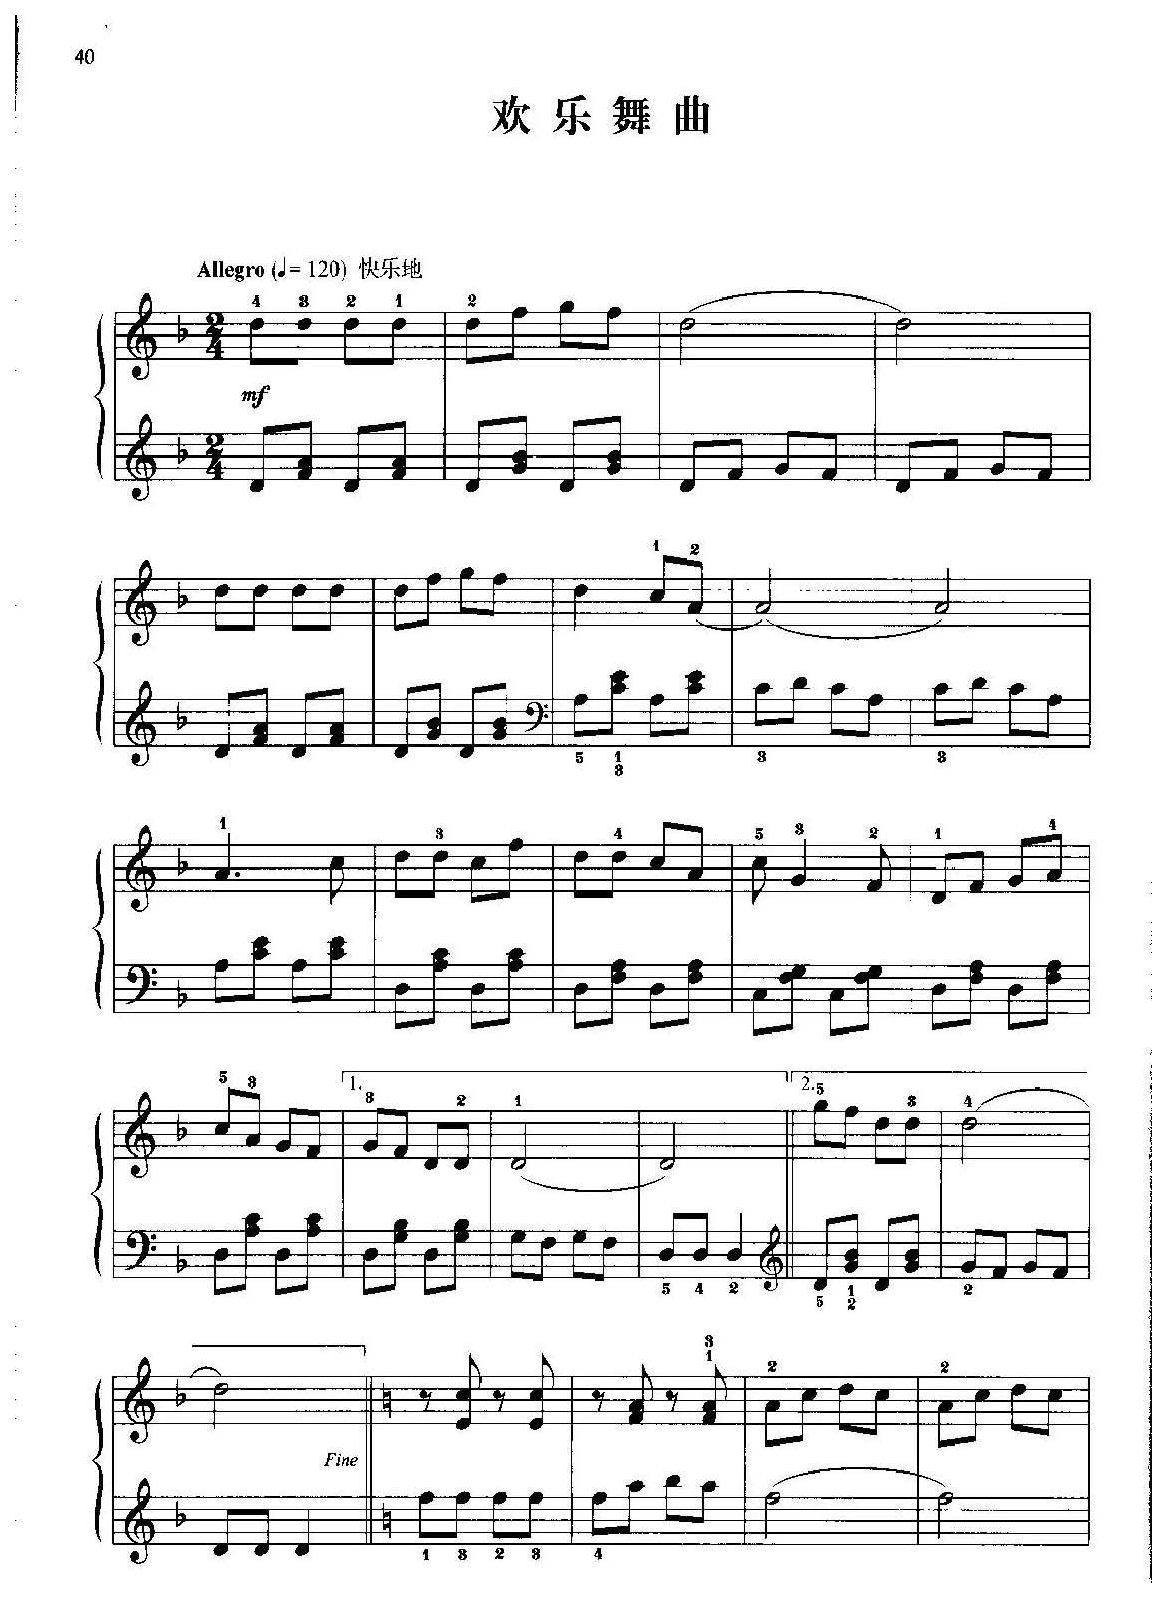 中国民歌钢琴小曲《欢乐舞曲》